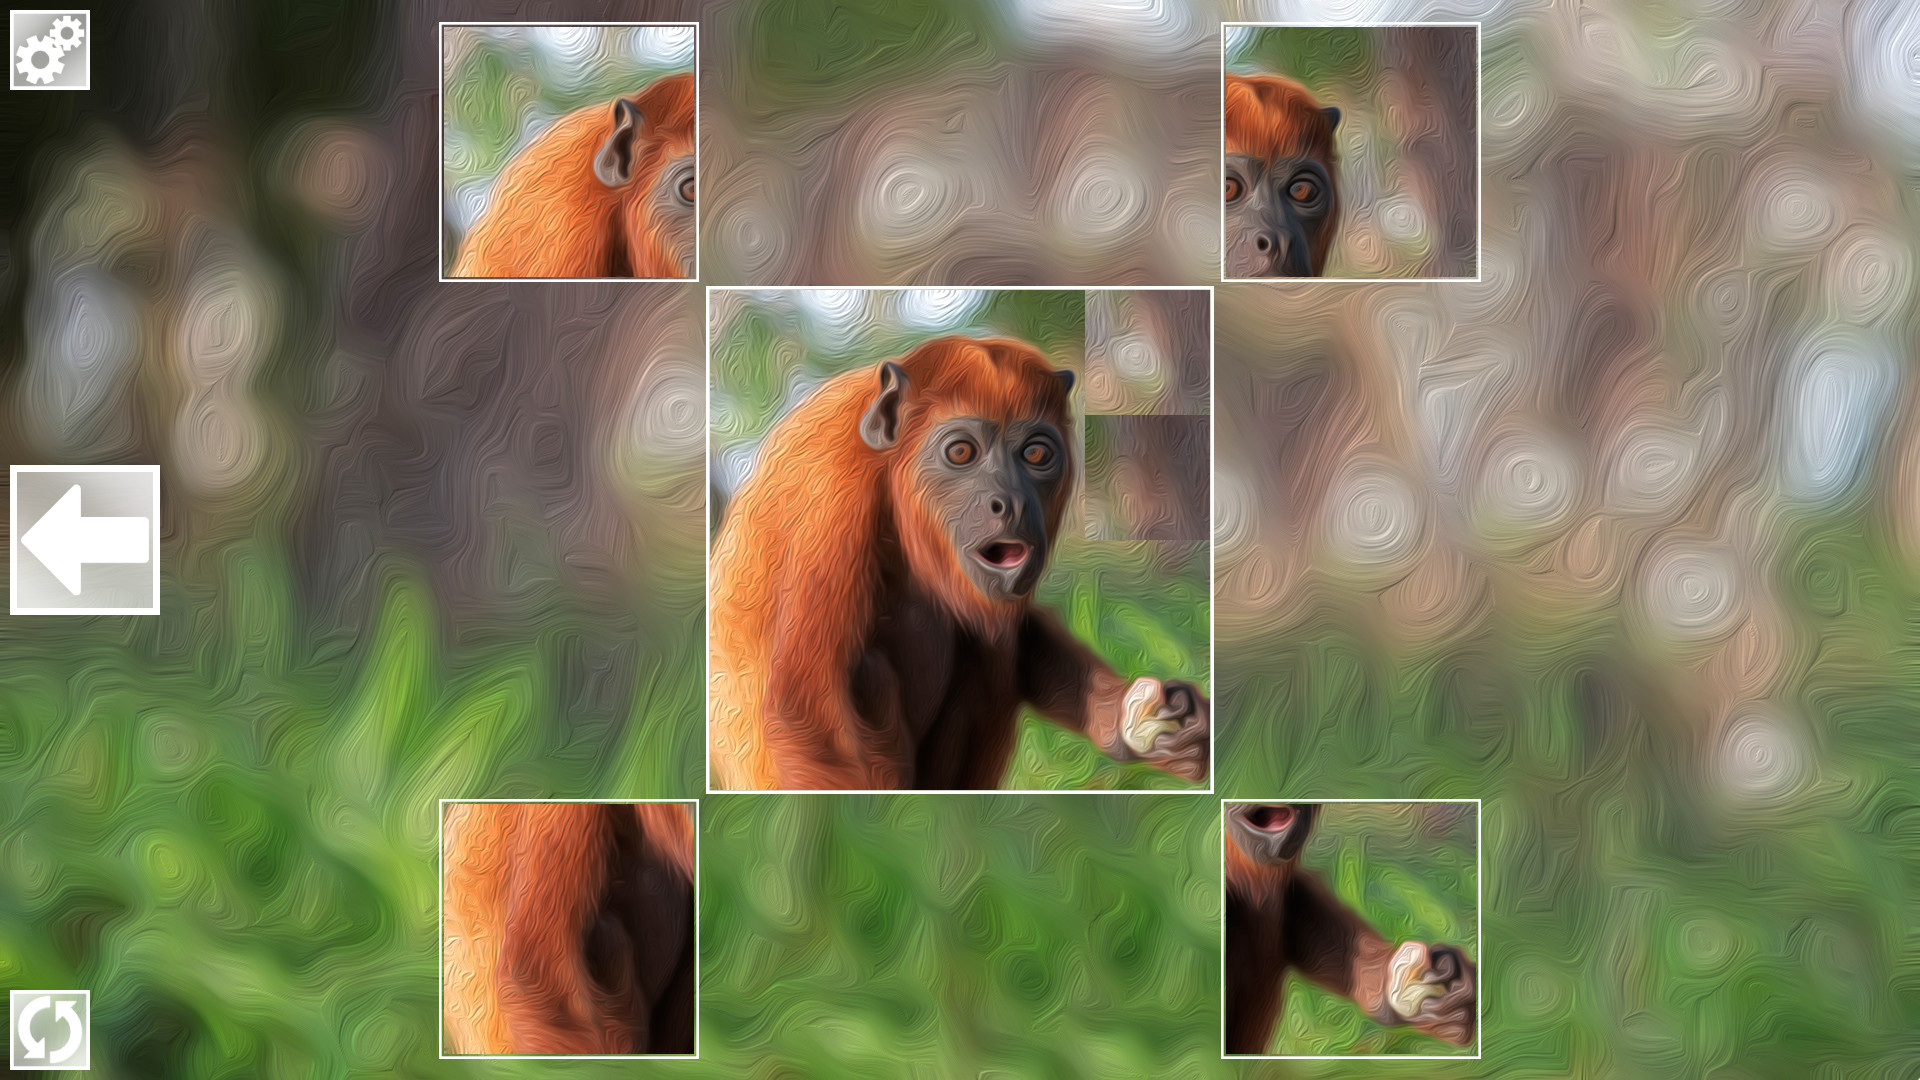 Puzzle Art: Primates Steam CD Key 0.44 $